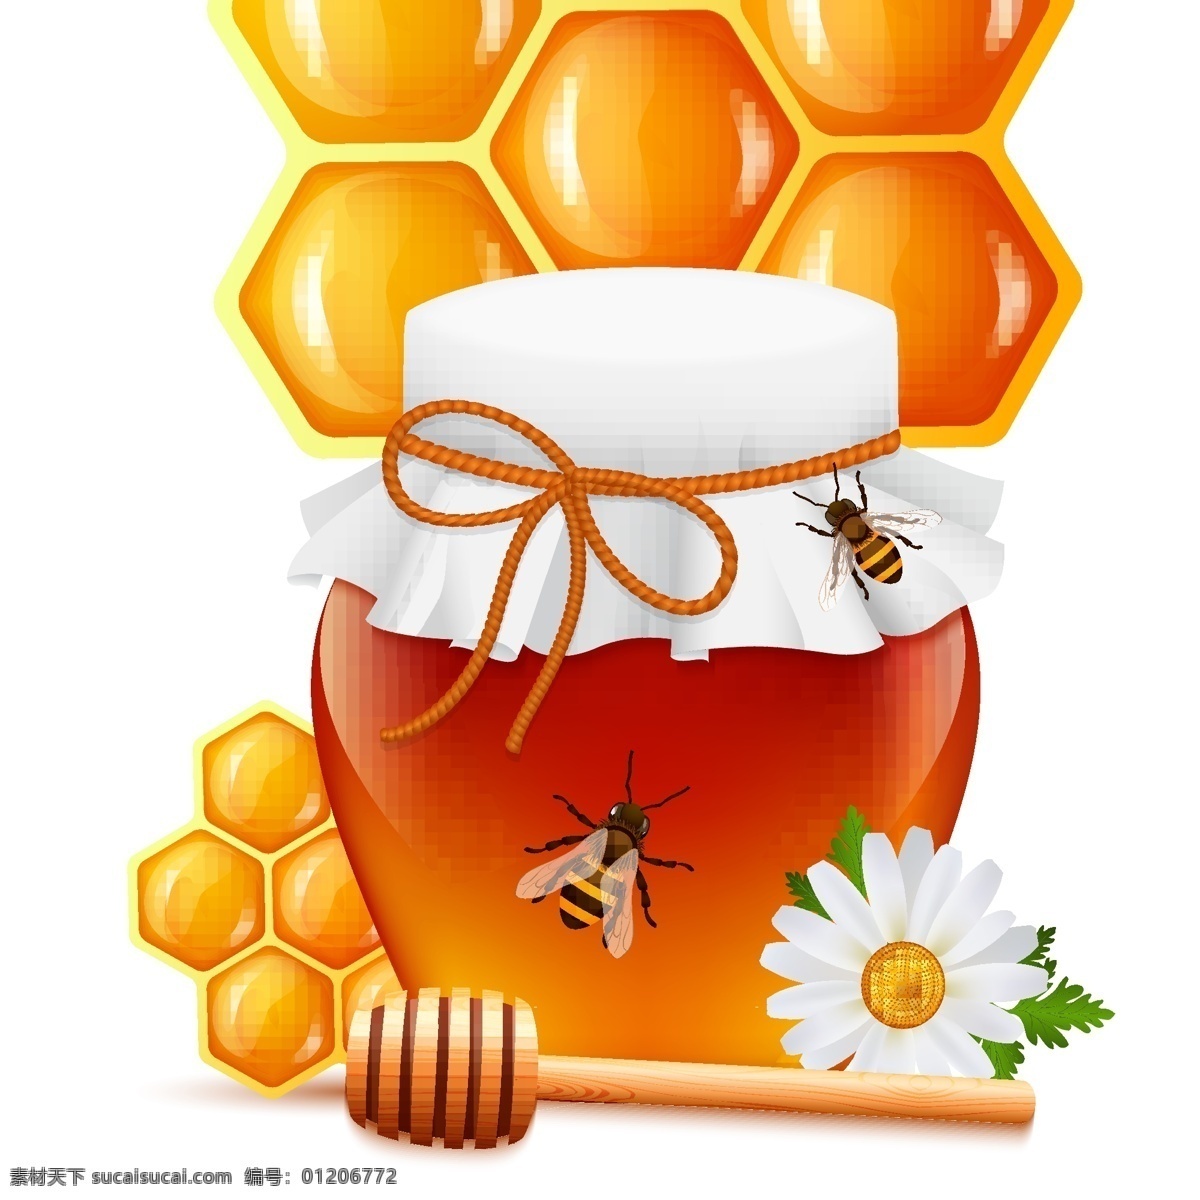 小蜜蜂插画 蜜蜂图标 蜂蜜图标 自然标签 山脉标签 动物标签 创意标签 标签 图标 复古标签 卡片 吊牌 蜂蜜搅拌棒 蜂巢 蜂蜜罐 蜂蜜 蜜蜂 蜂窝 蜂箱 蜜蜂logl 蜂蜜logo 矢量插画